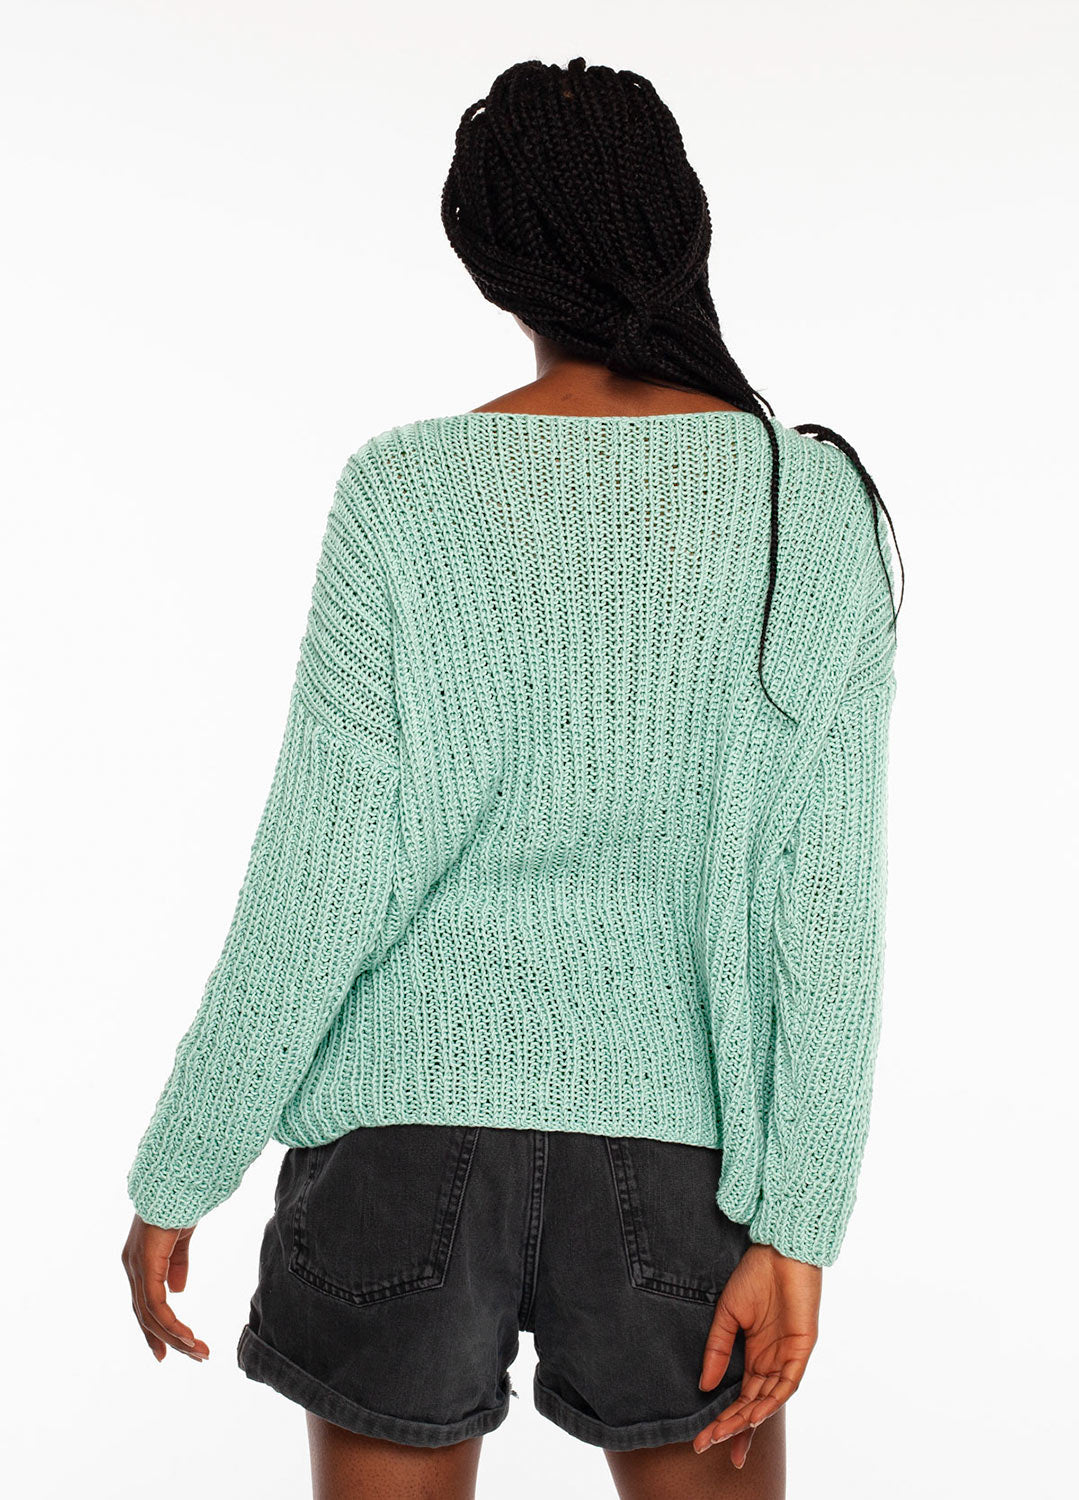 Wand Sweater Kit